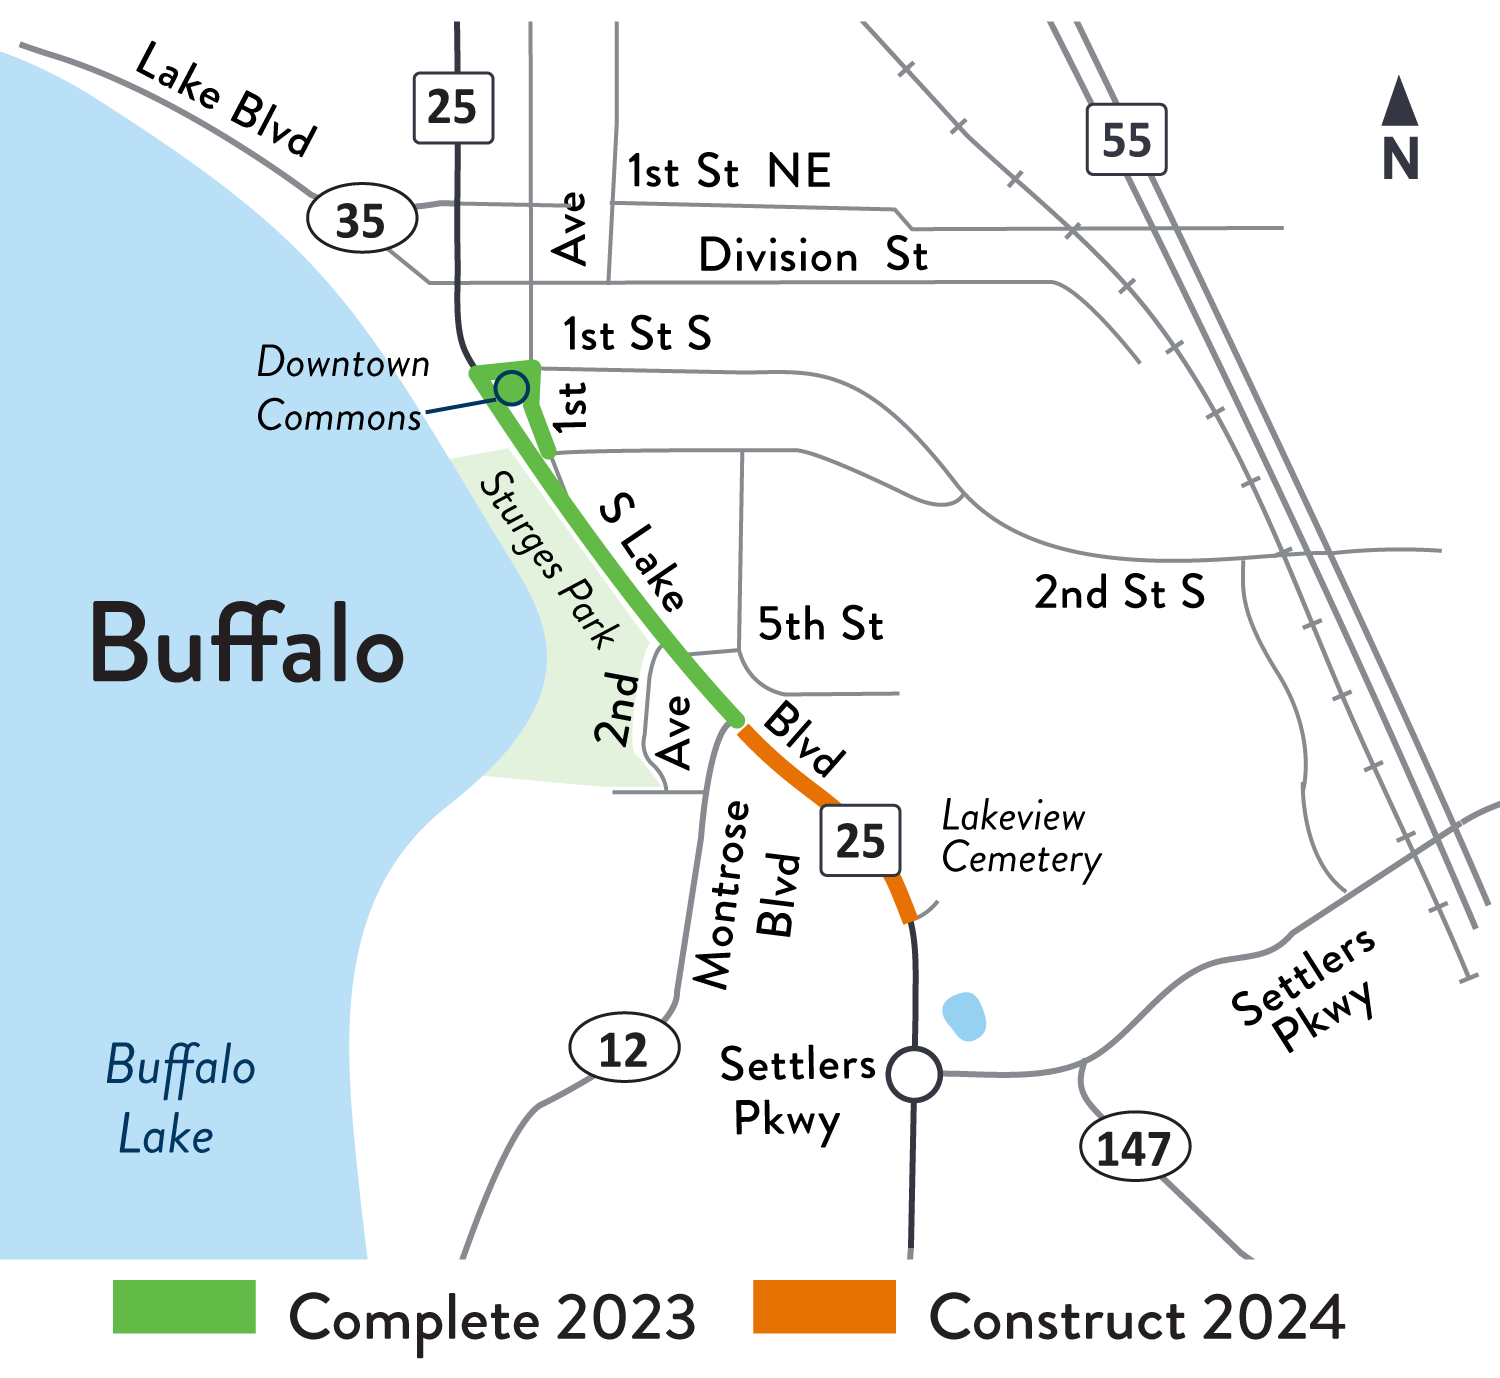 Hwy 25 detour map in Buffalo